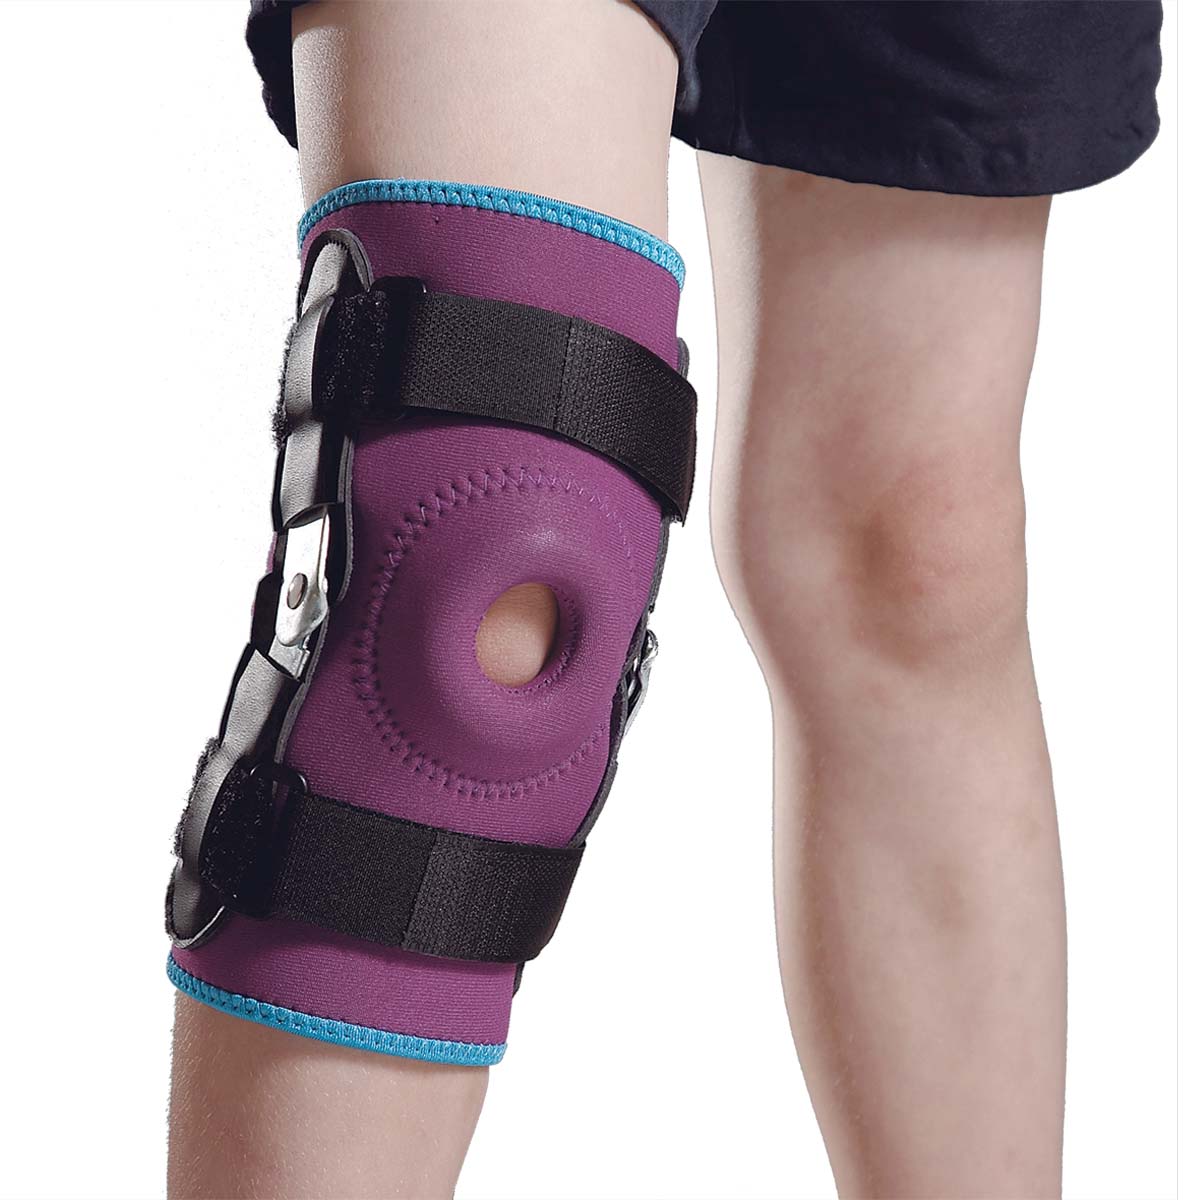 Child Hinged Neoprene Knee Support